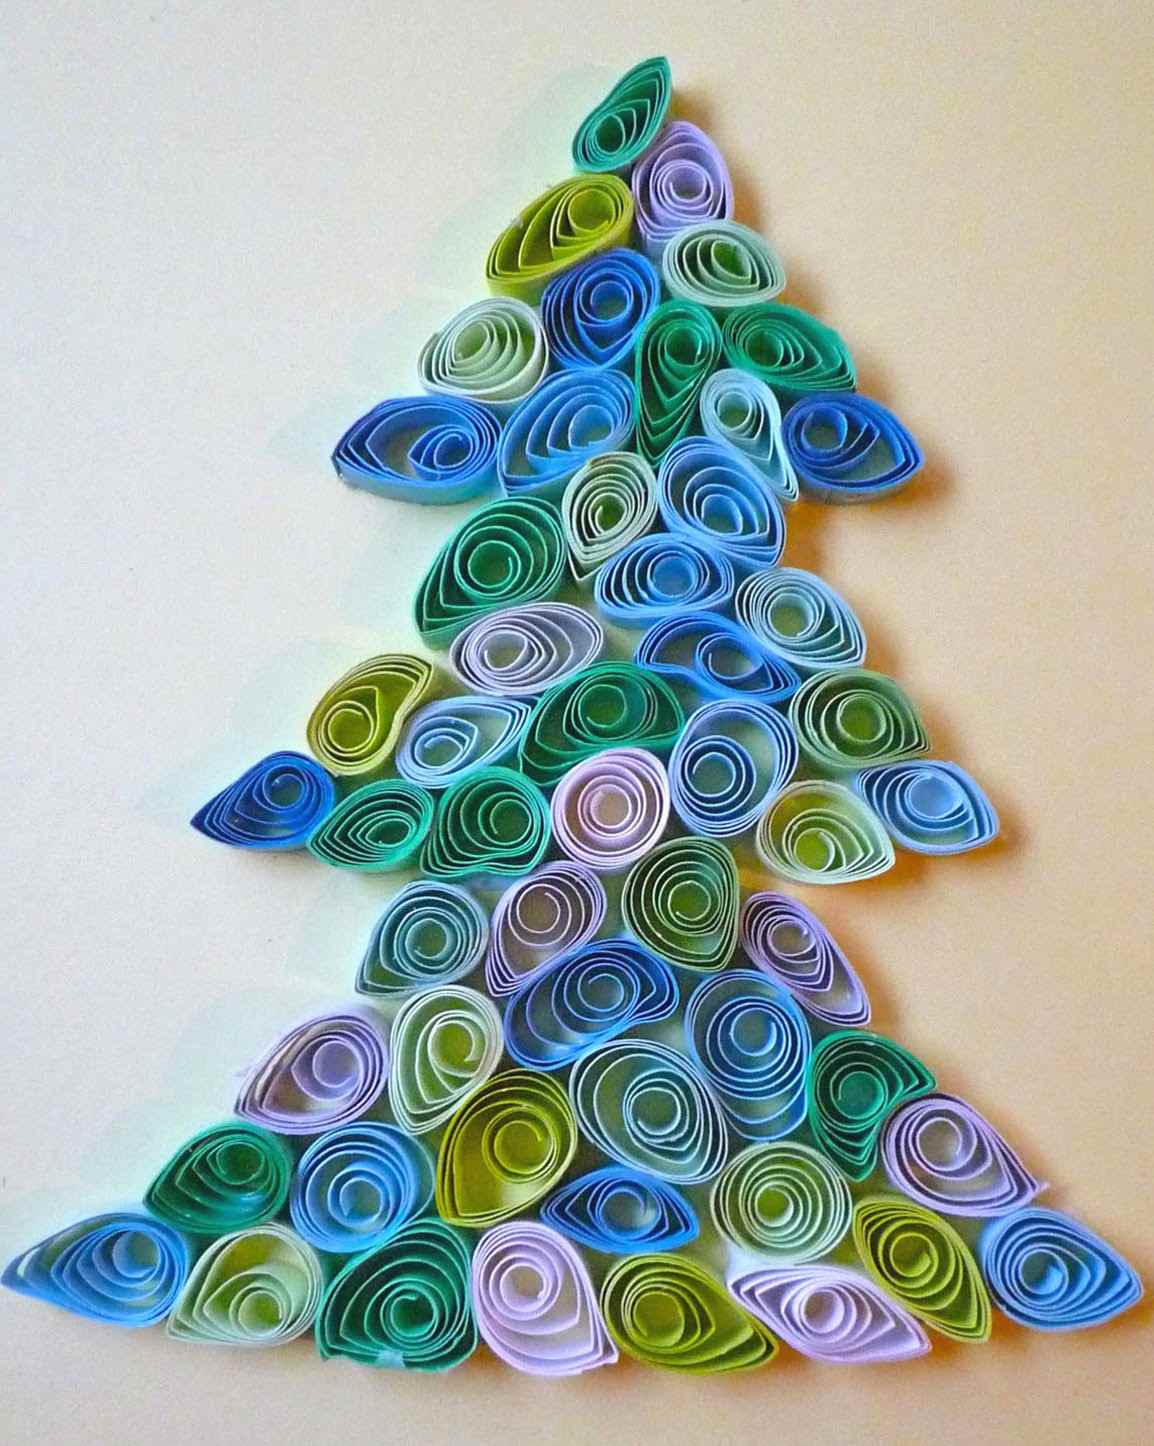 een voorbeeld van het zelf maken van een heldere kerstboom uit karton